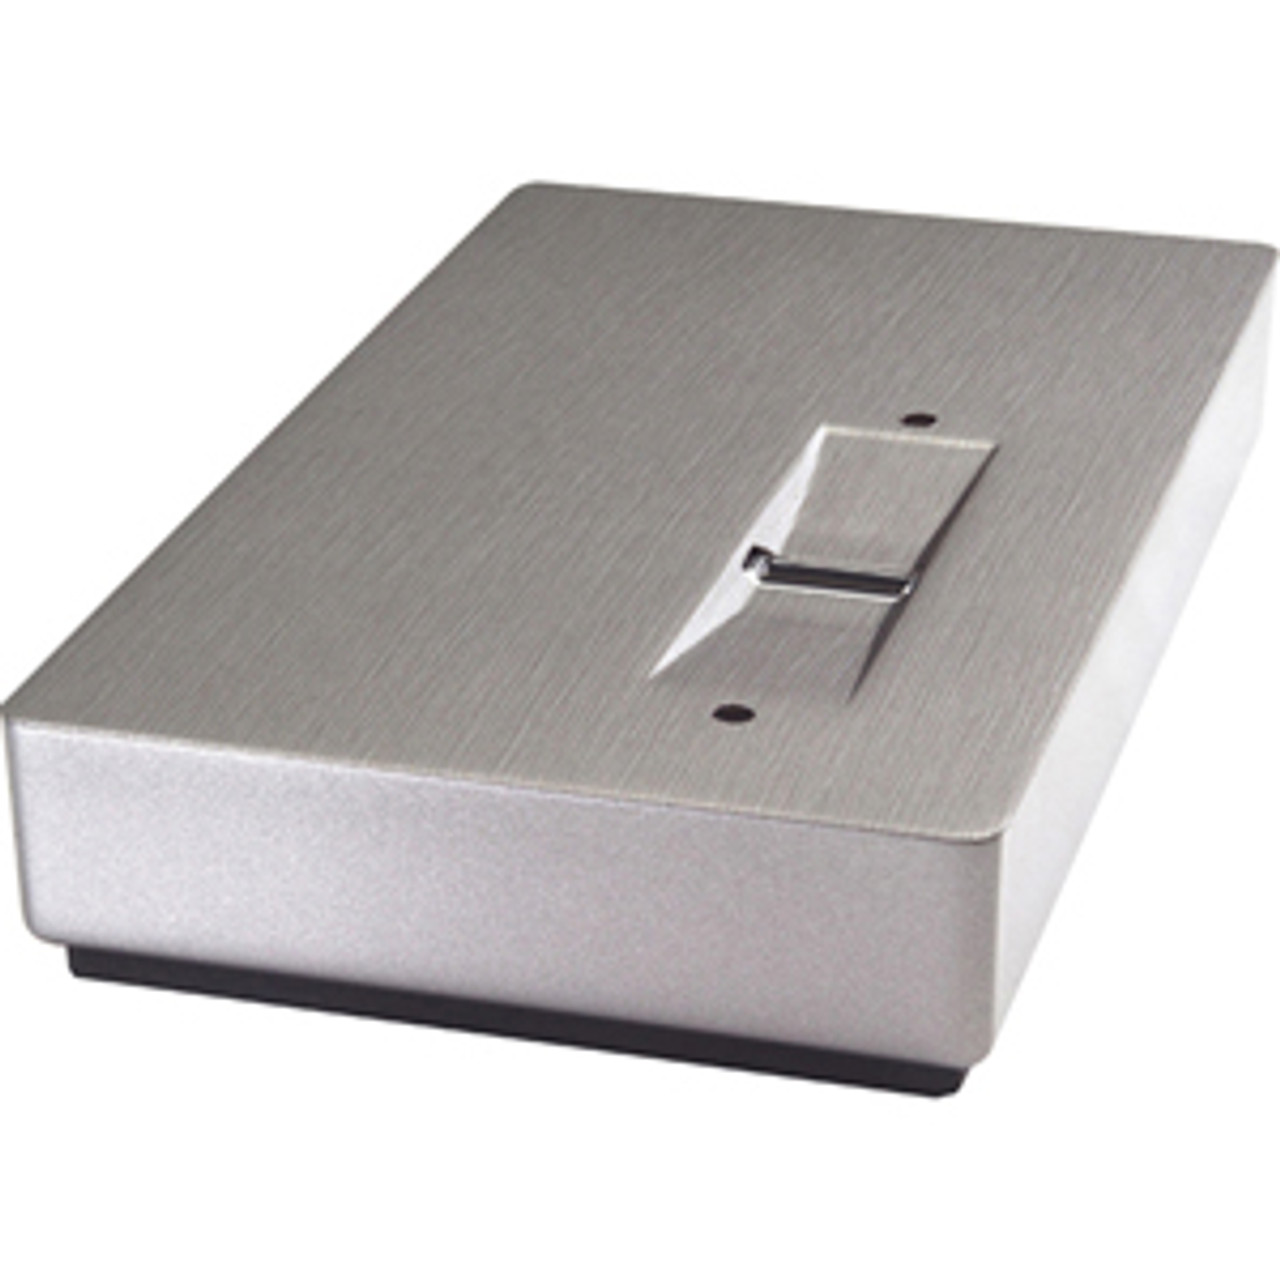 301206 - LaCie SAFE 160 GB External Hard Drive - USB 2.0 - 5400 rpm - 8 MB Buffer